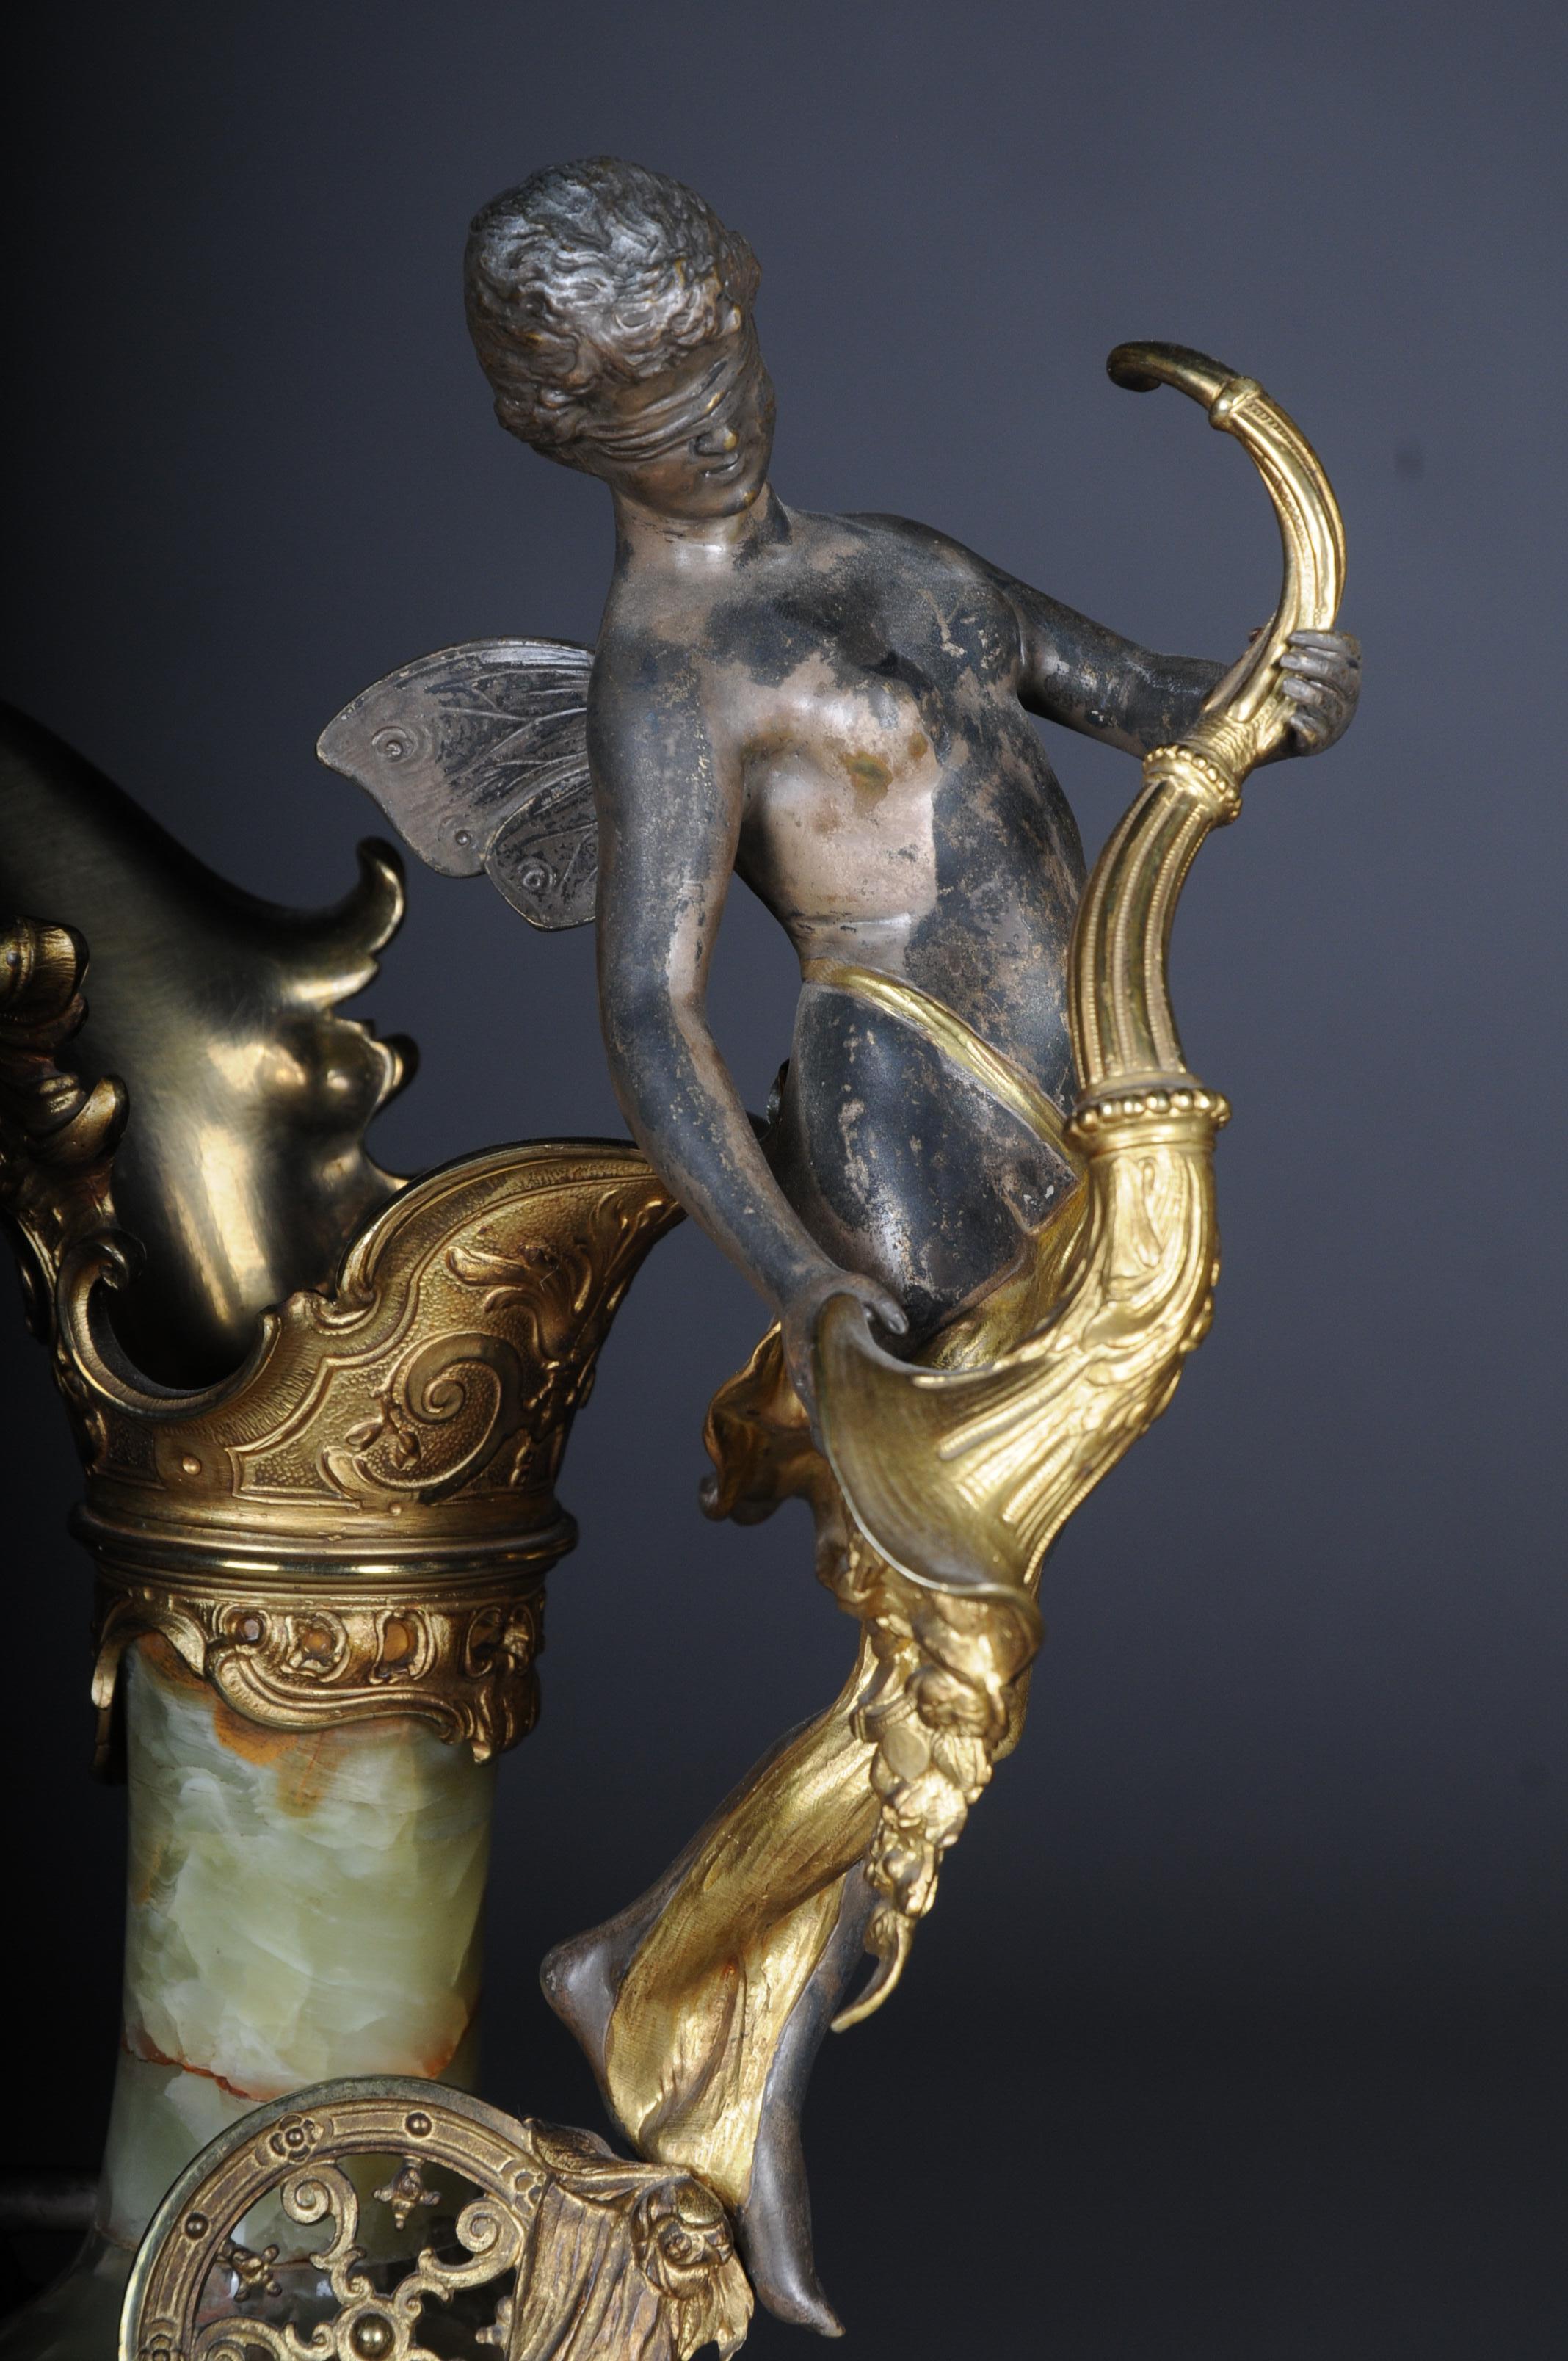 19. Jahrhundert Französischer Onyx-Pompkrug/-Vase Bronze versilbert Napoleon III
Korpus aus Onyx mit reichen versilberten Bronzeelementen. Eiförmige Laibung, eingezogener Hals und runder, profilierter Sockel. Plastische Putten auf Reliefband,